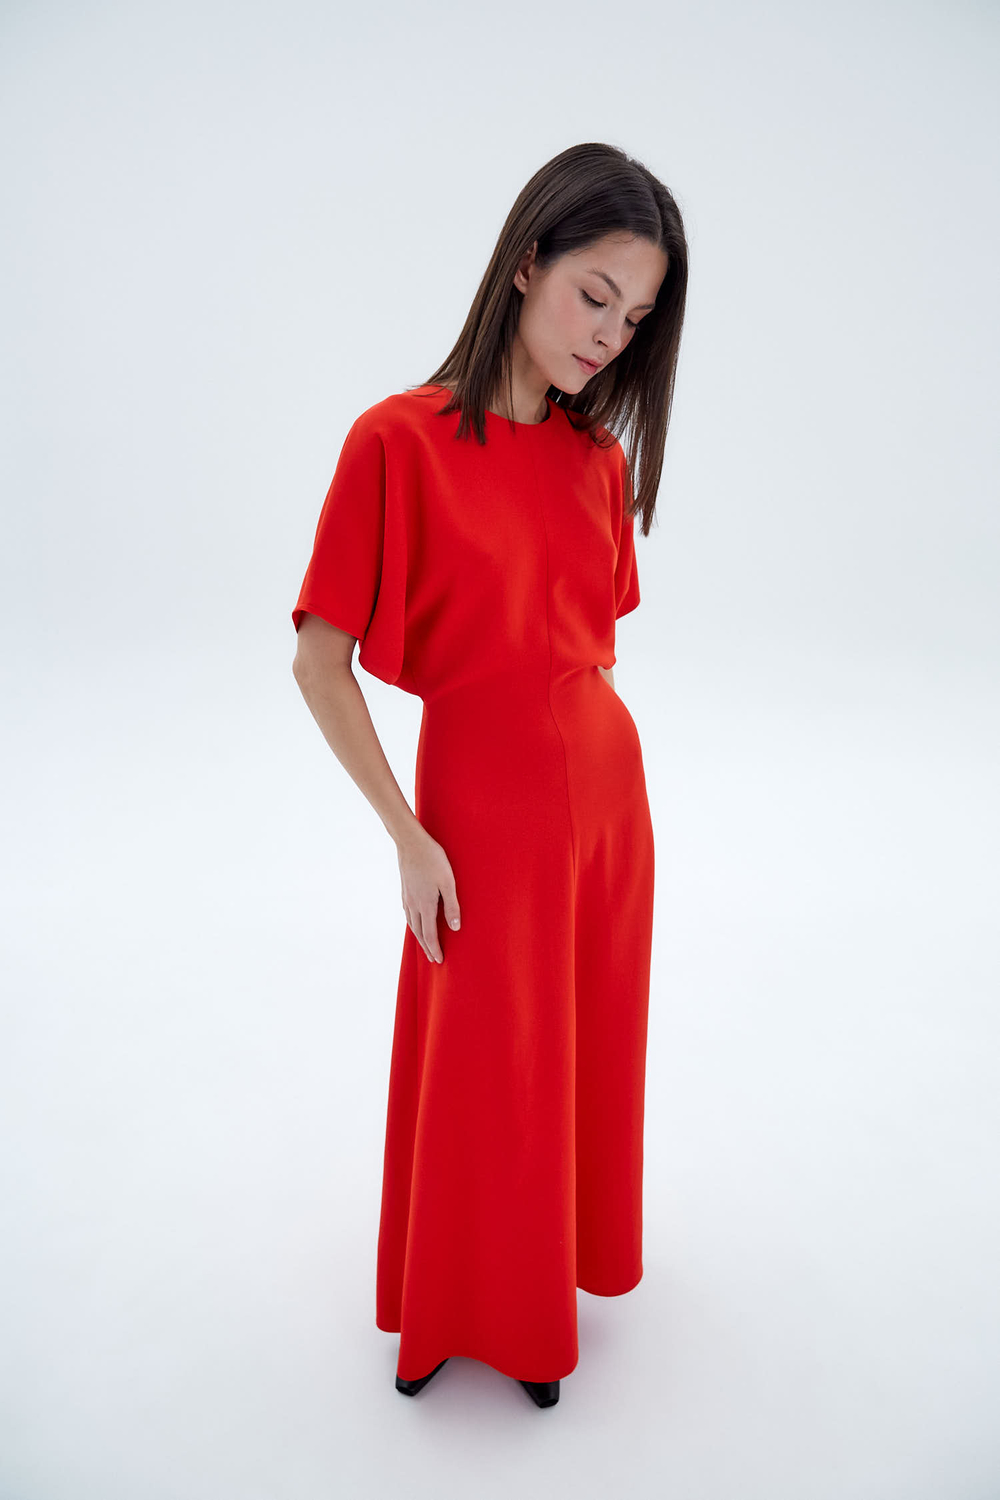 Платье приталенное из вискозы Стелла Маккартни красный